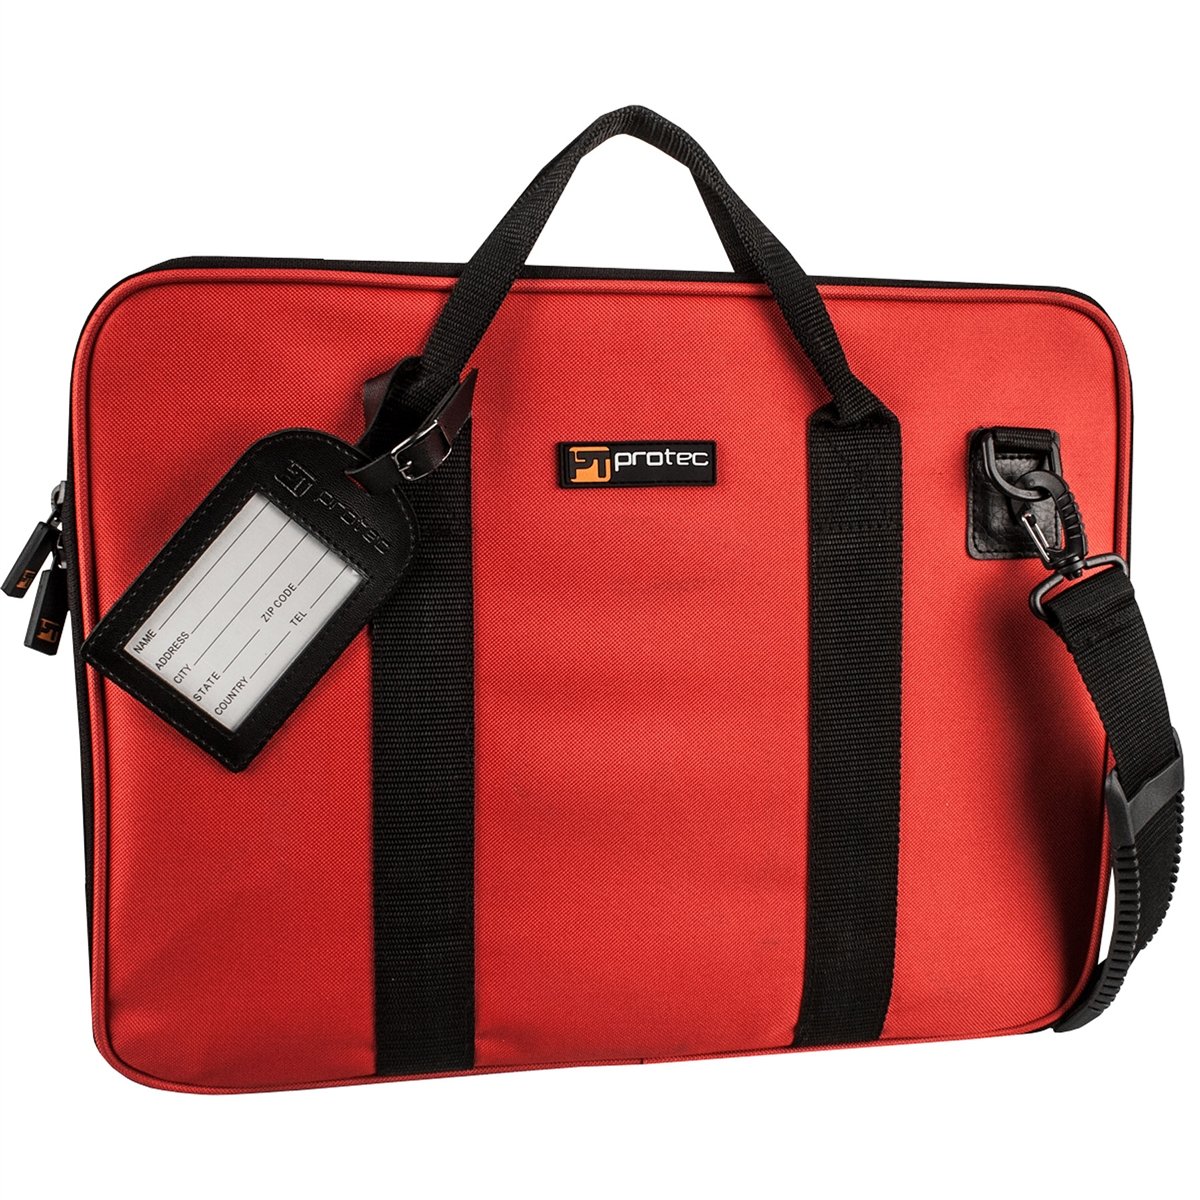 Protec - Slim Portfolio Bag-Accessories-Protec-Red-Music Elements